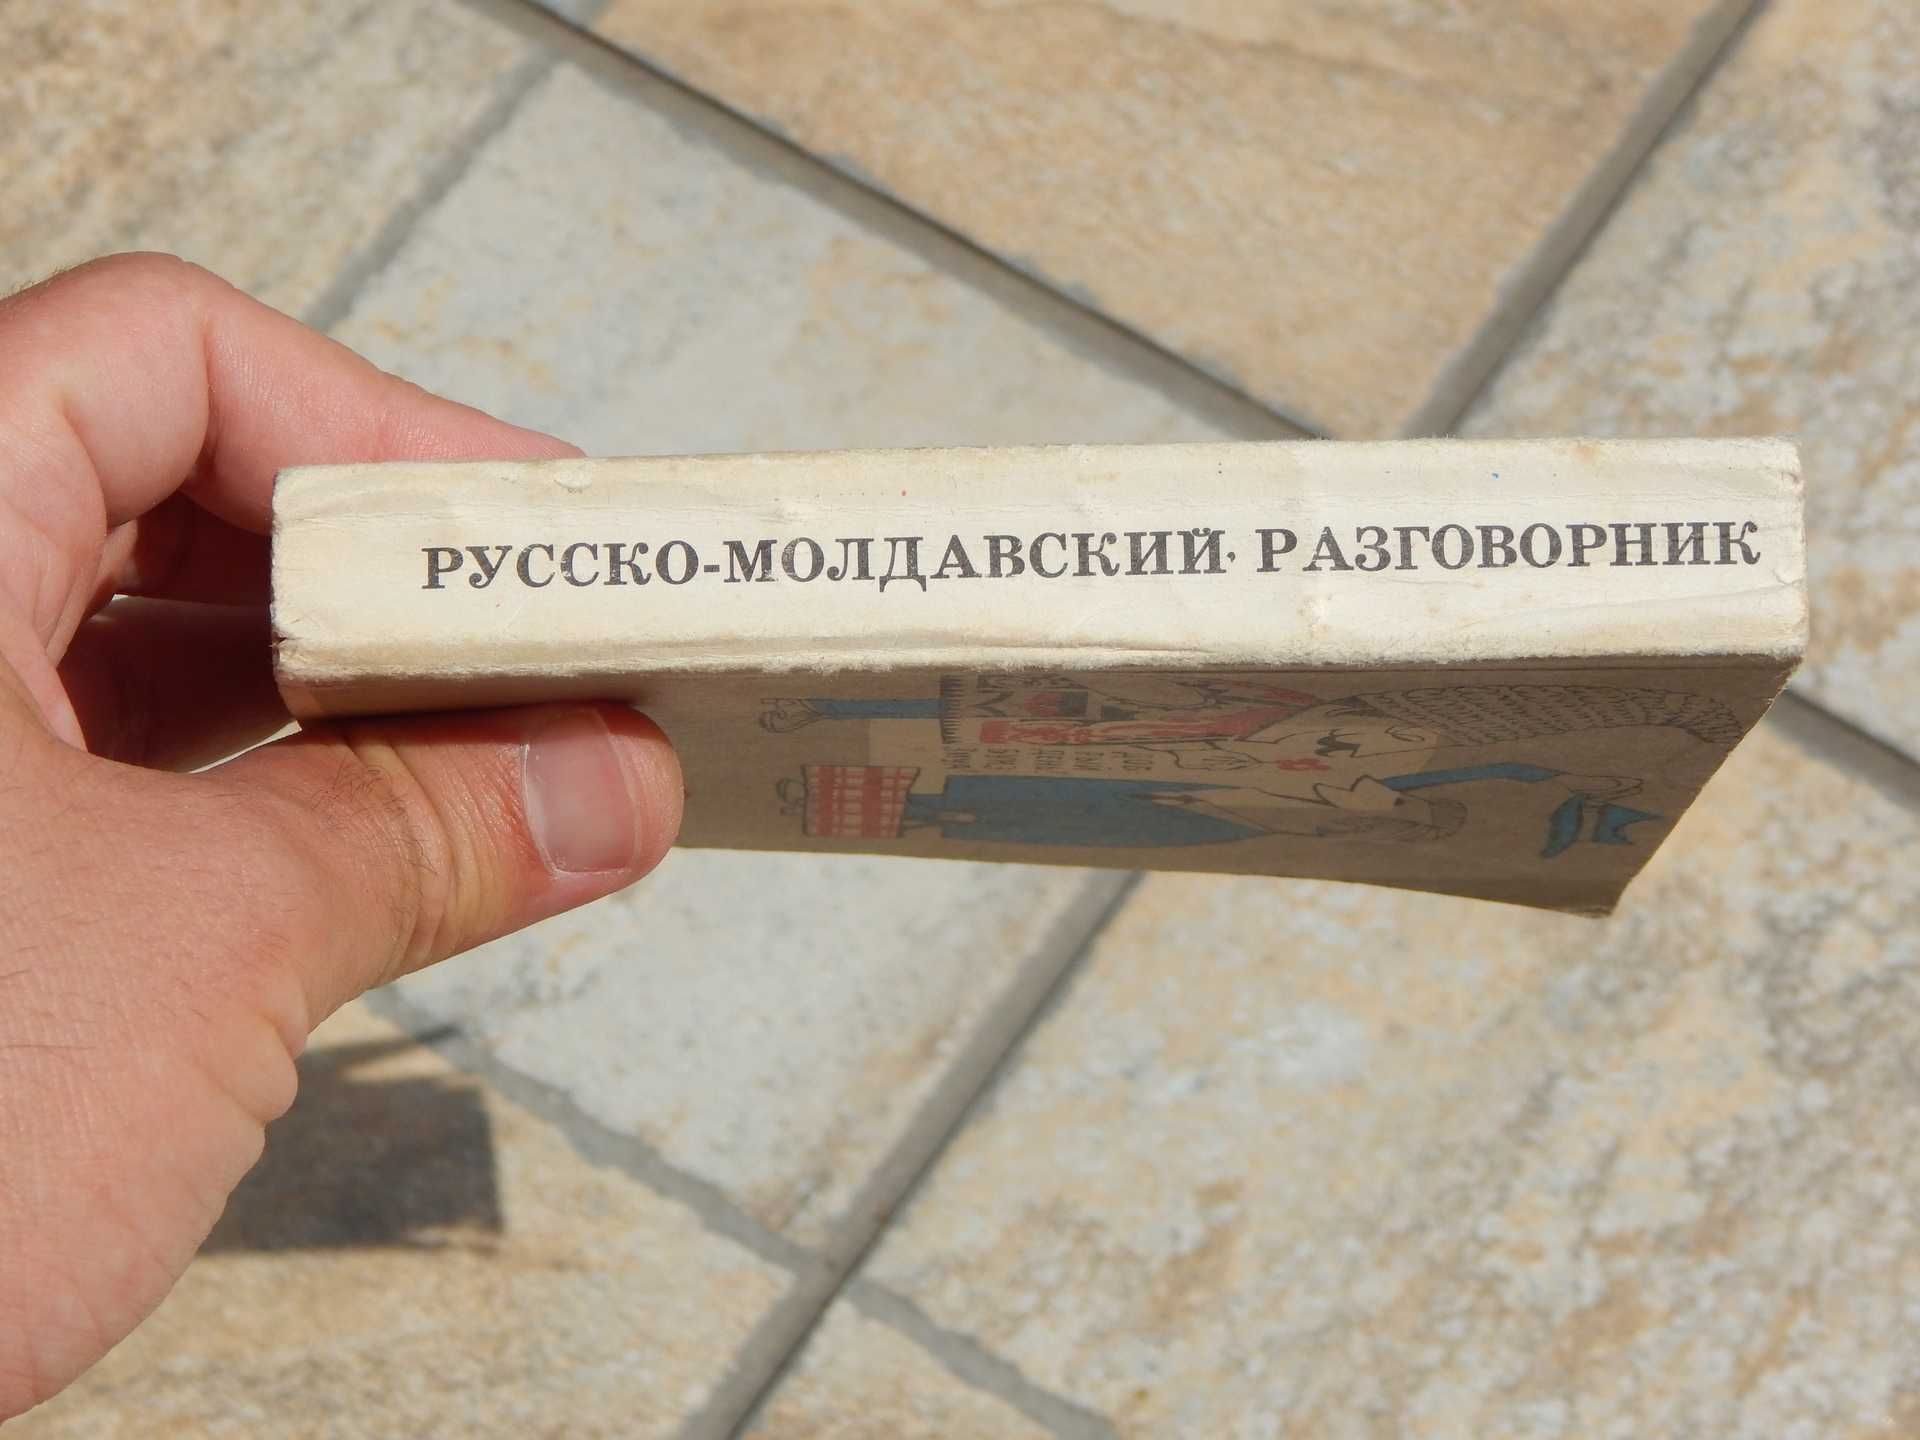 Dictionar de expresii uzuale rus - moldovenesc ed Lumina Chisinau 1980